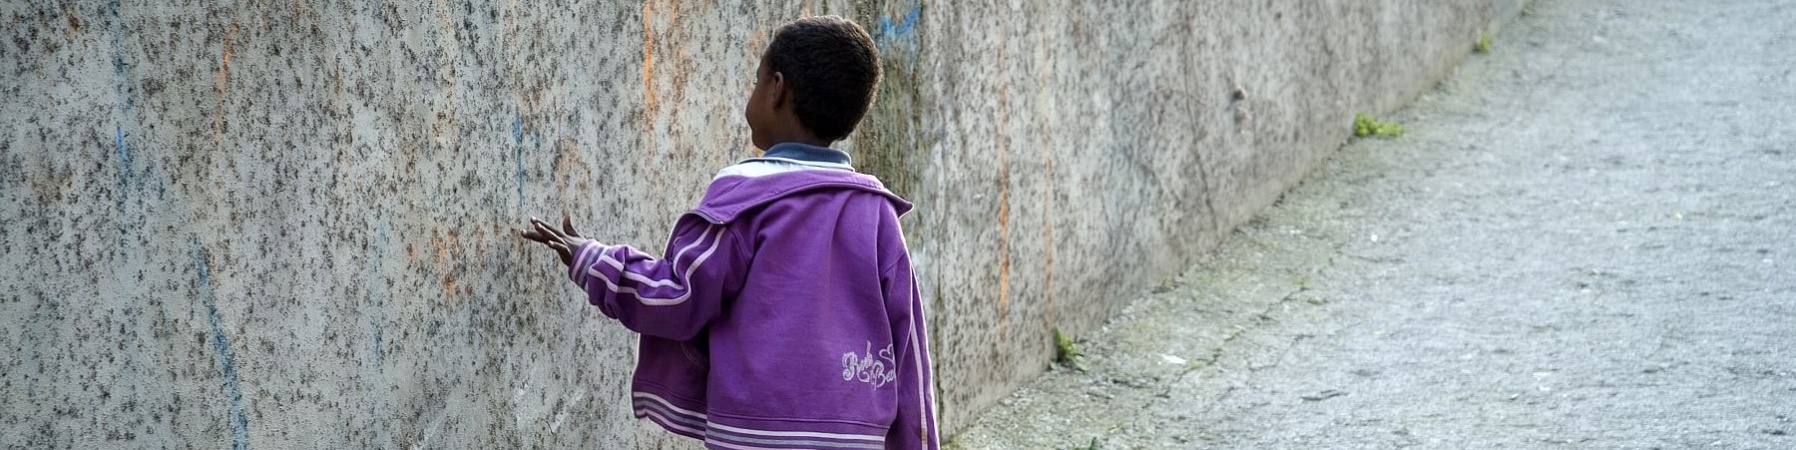 Bambino migrante cammina di spalle toccando muro grigio